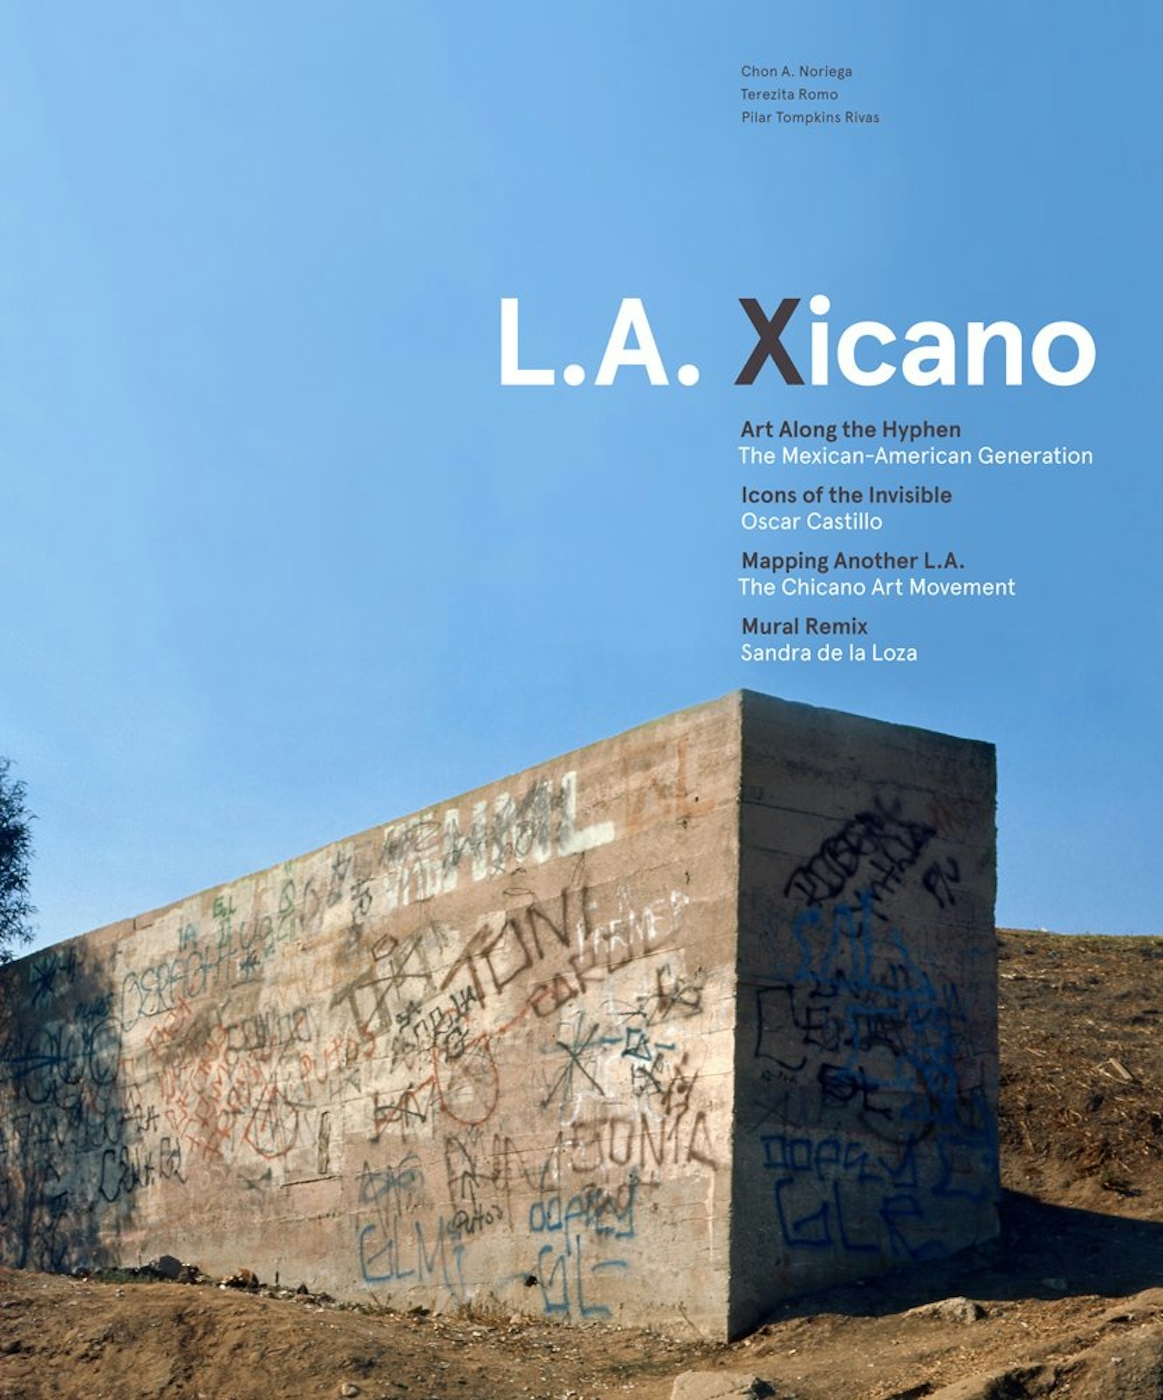 L.A. Xicano